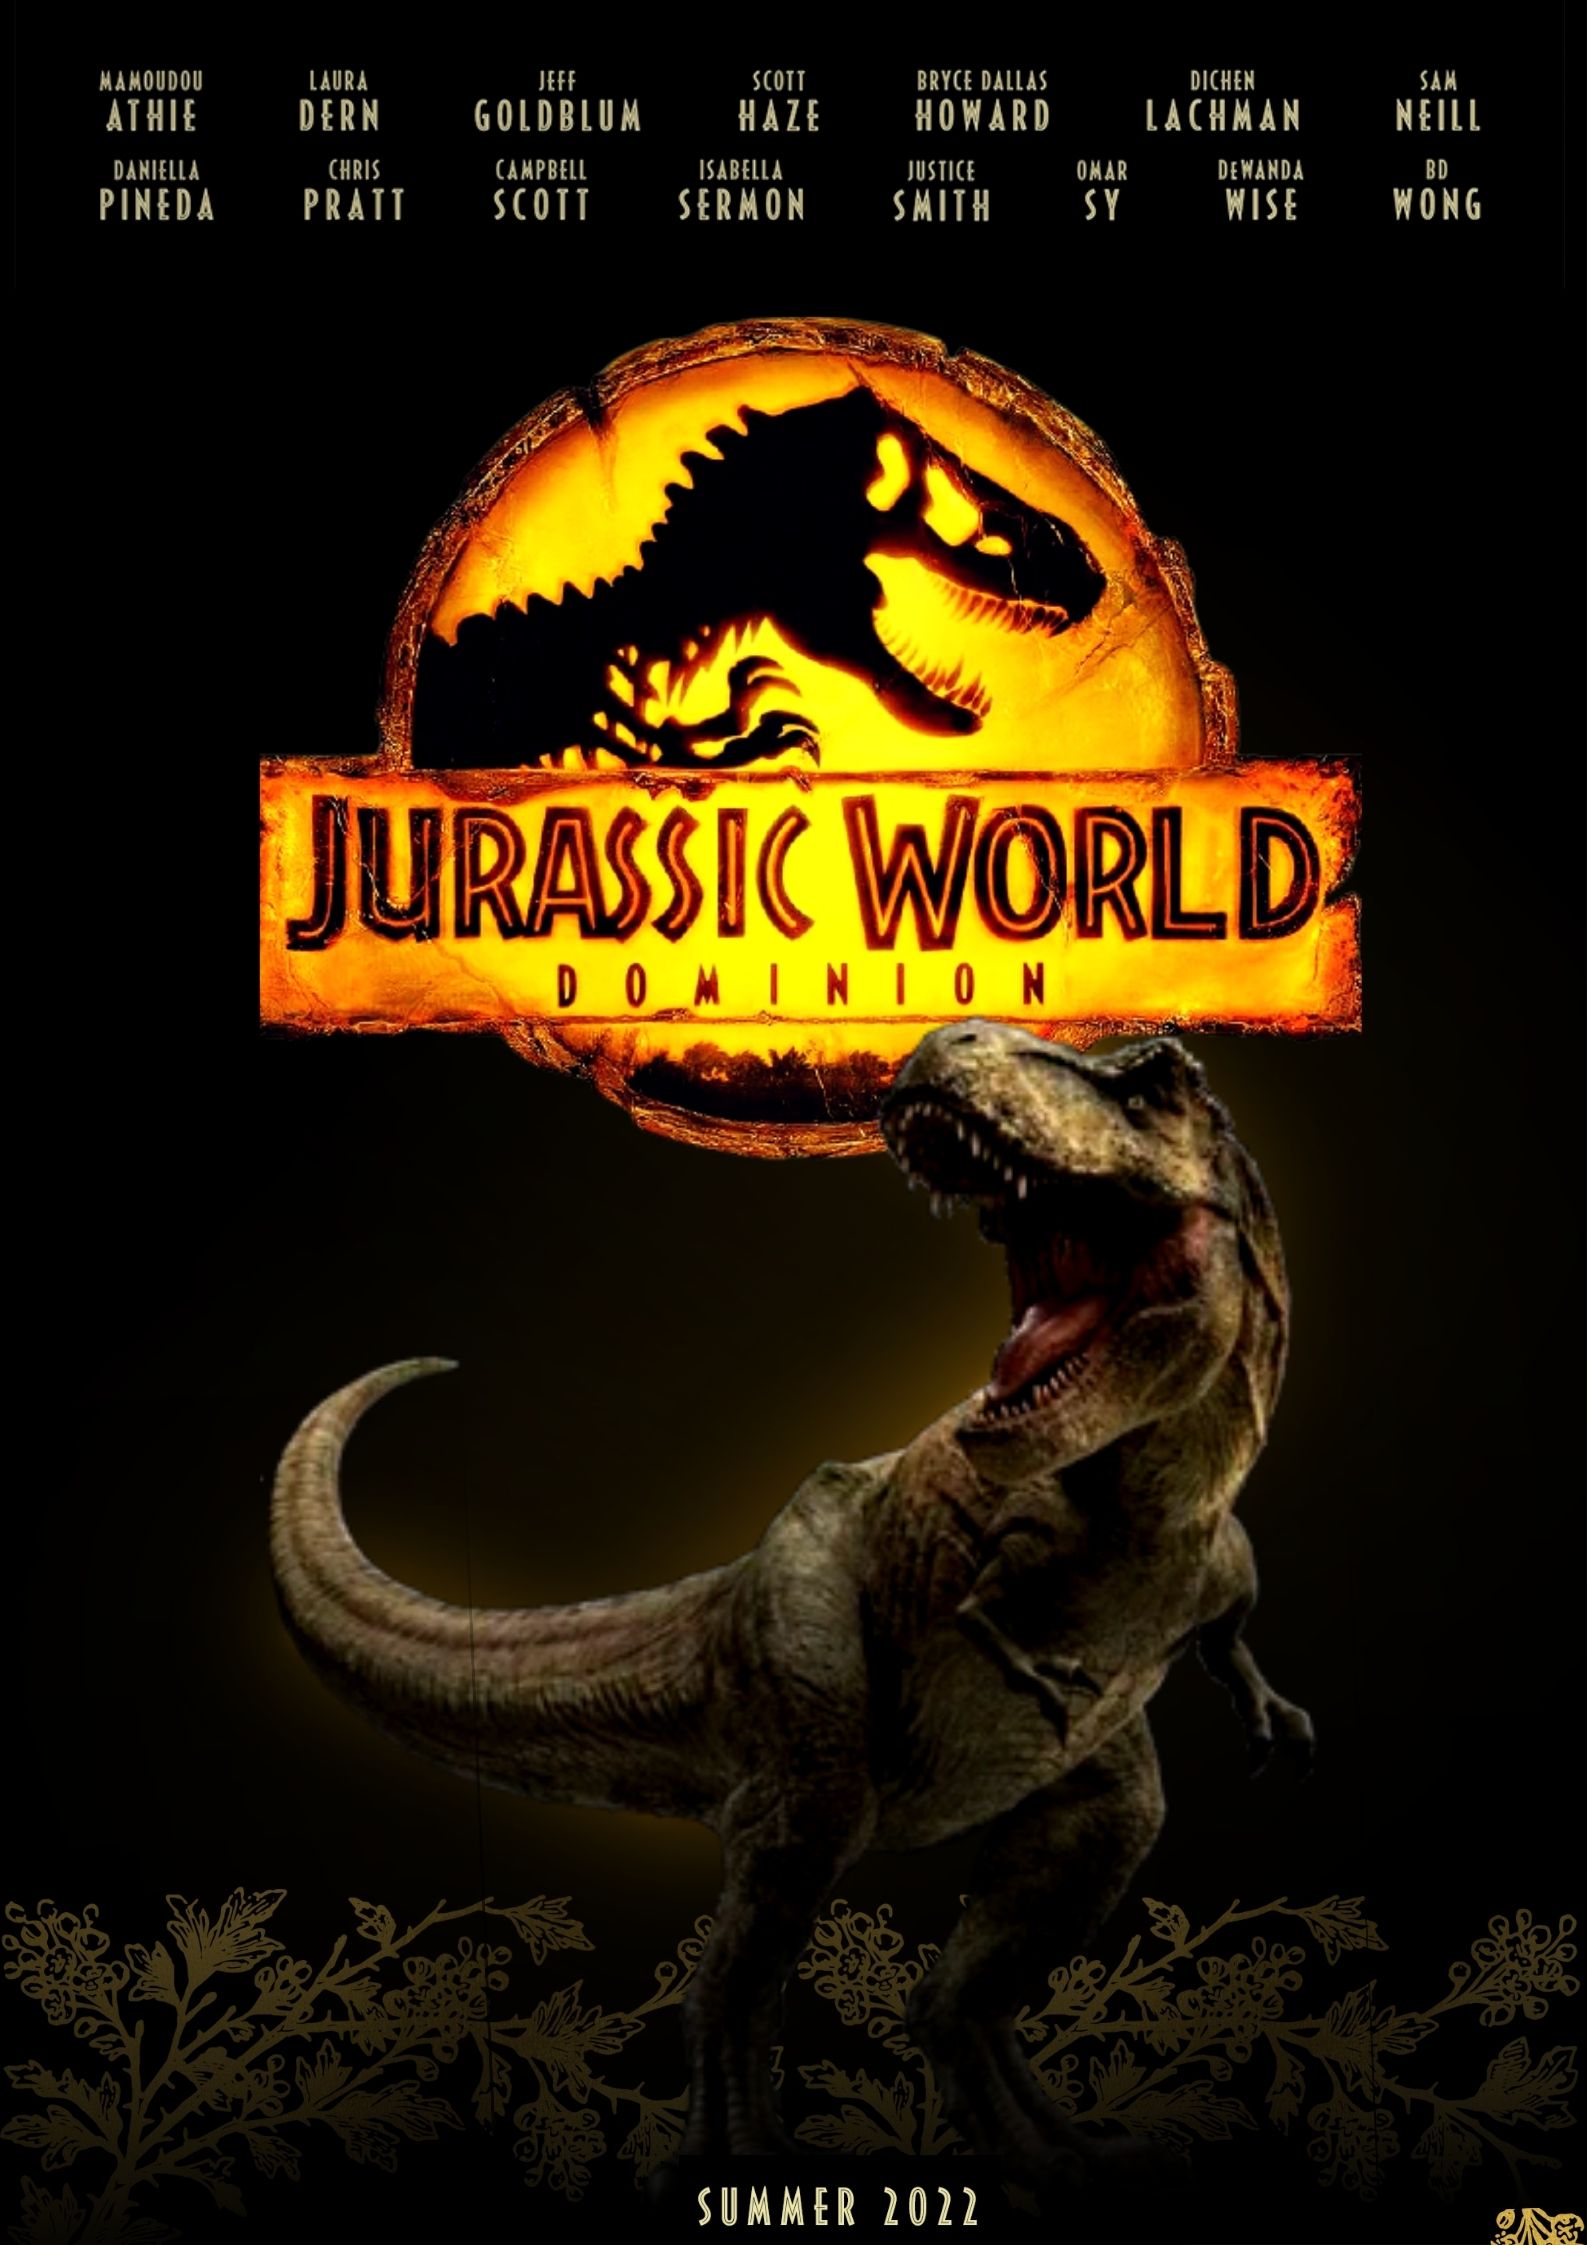 ดูหนังออนไลน์ฟรี Jurassic World Dominion (2022) จูราสสิค เวิลด์ ทวงคืนอาณาจักร หนังเต็มเรื่อง หนังมาสเตอร์ ดูหนังHD ดูหนังออนไลน์ ดูหนังใหม่